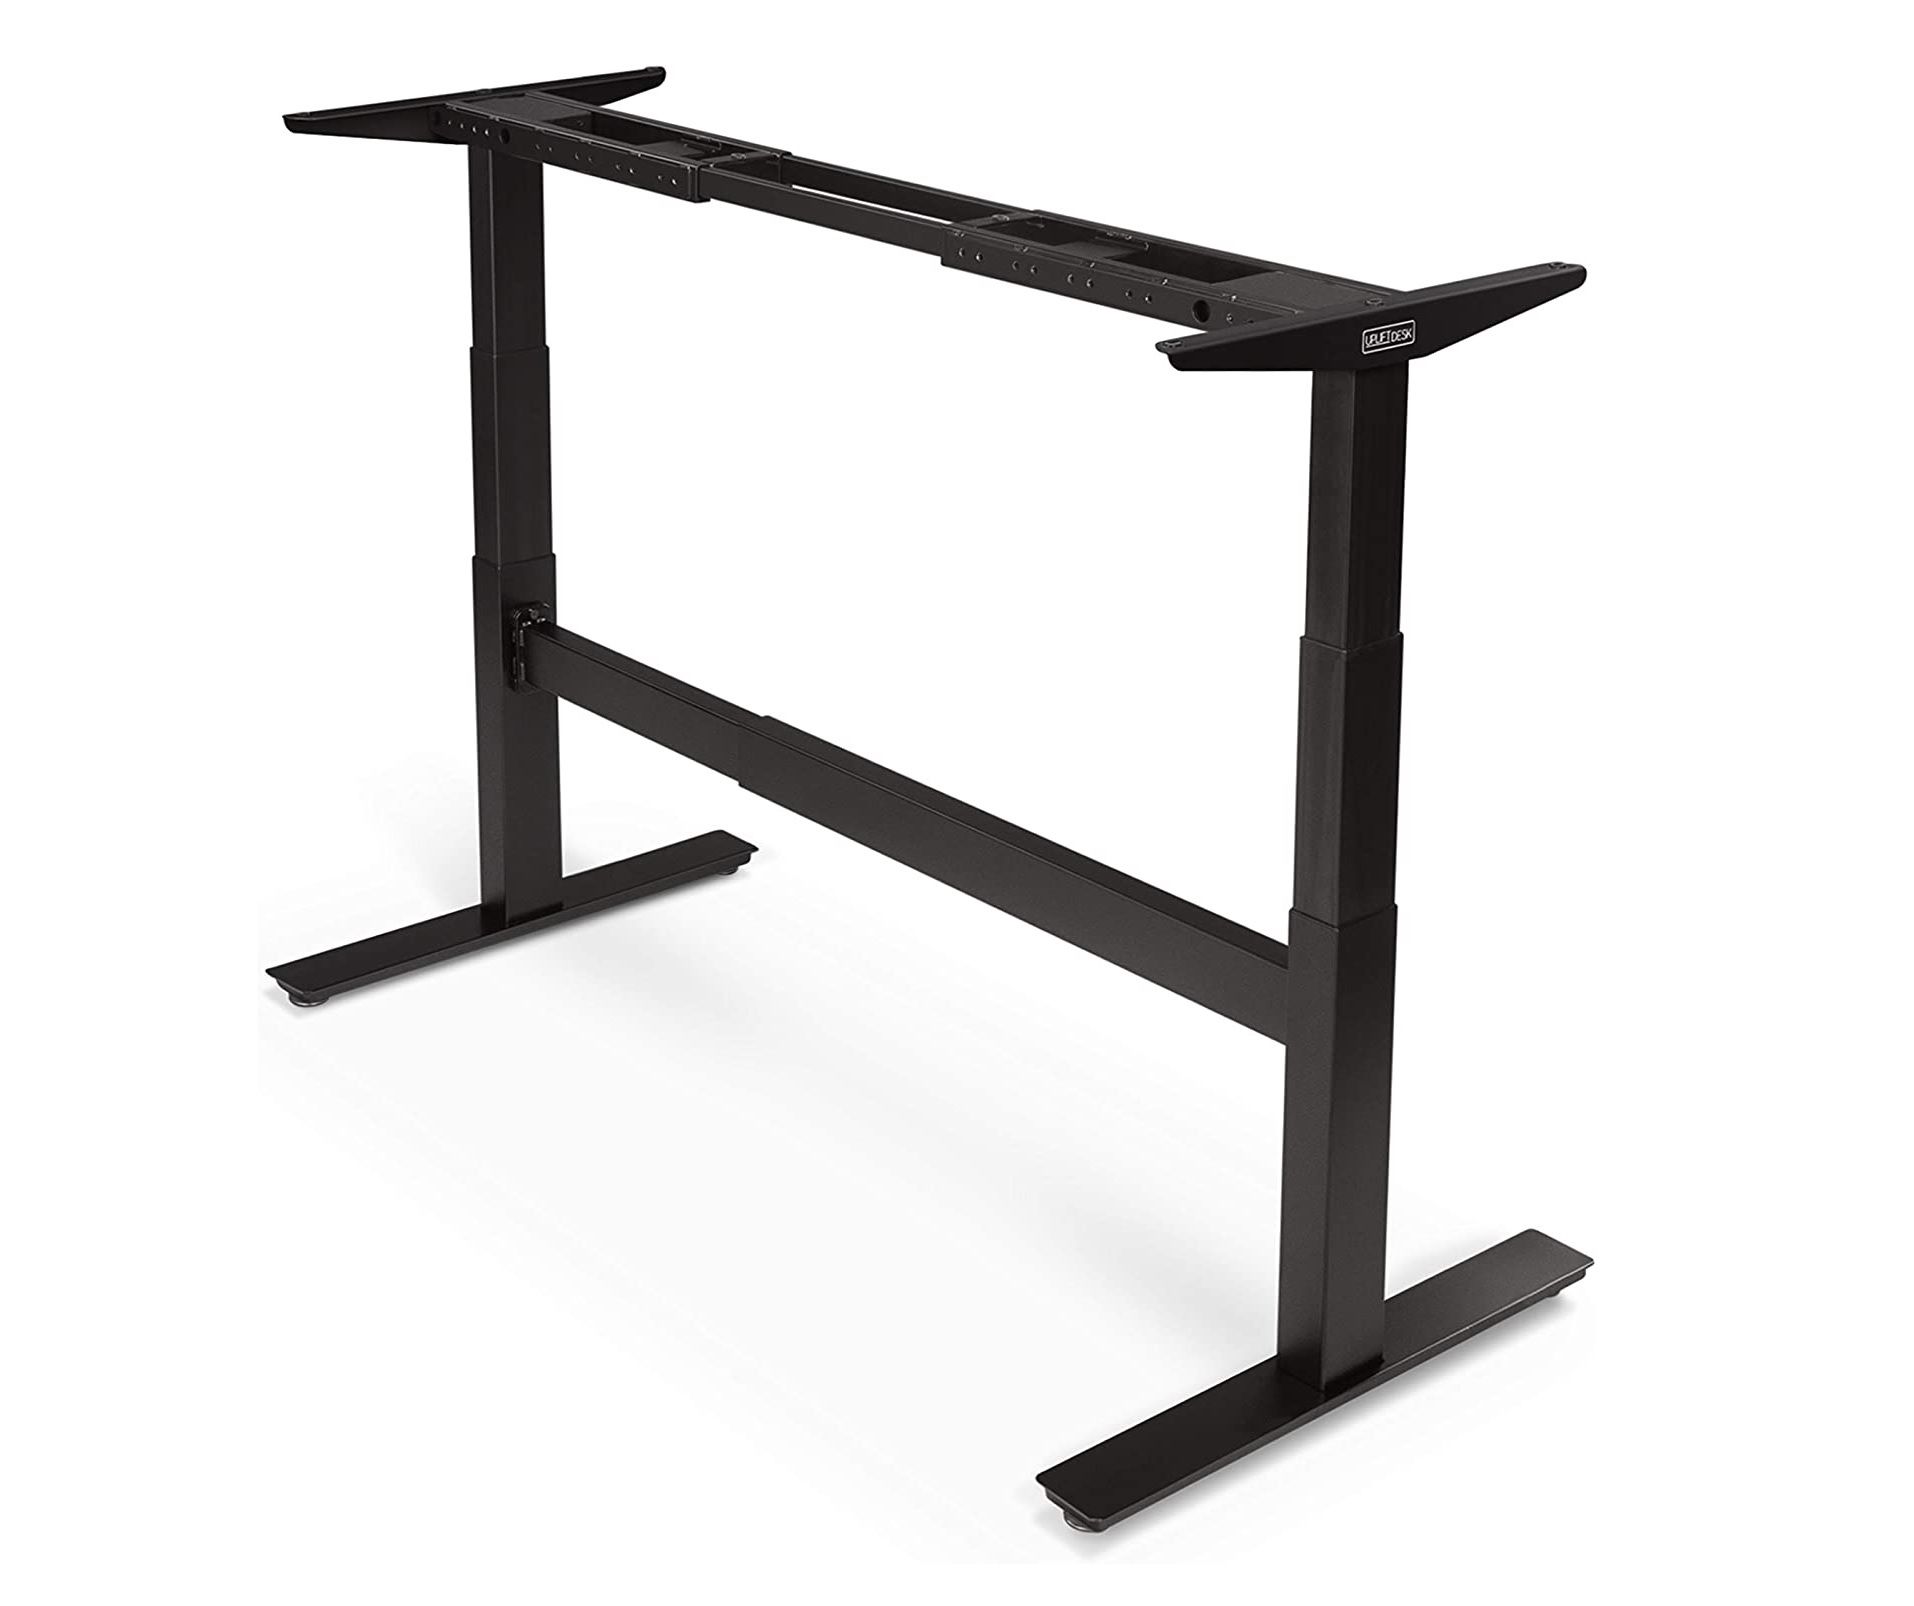 the t-frame model of the UpliftDesk v2 Commercial Standing Desk